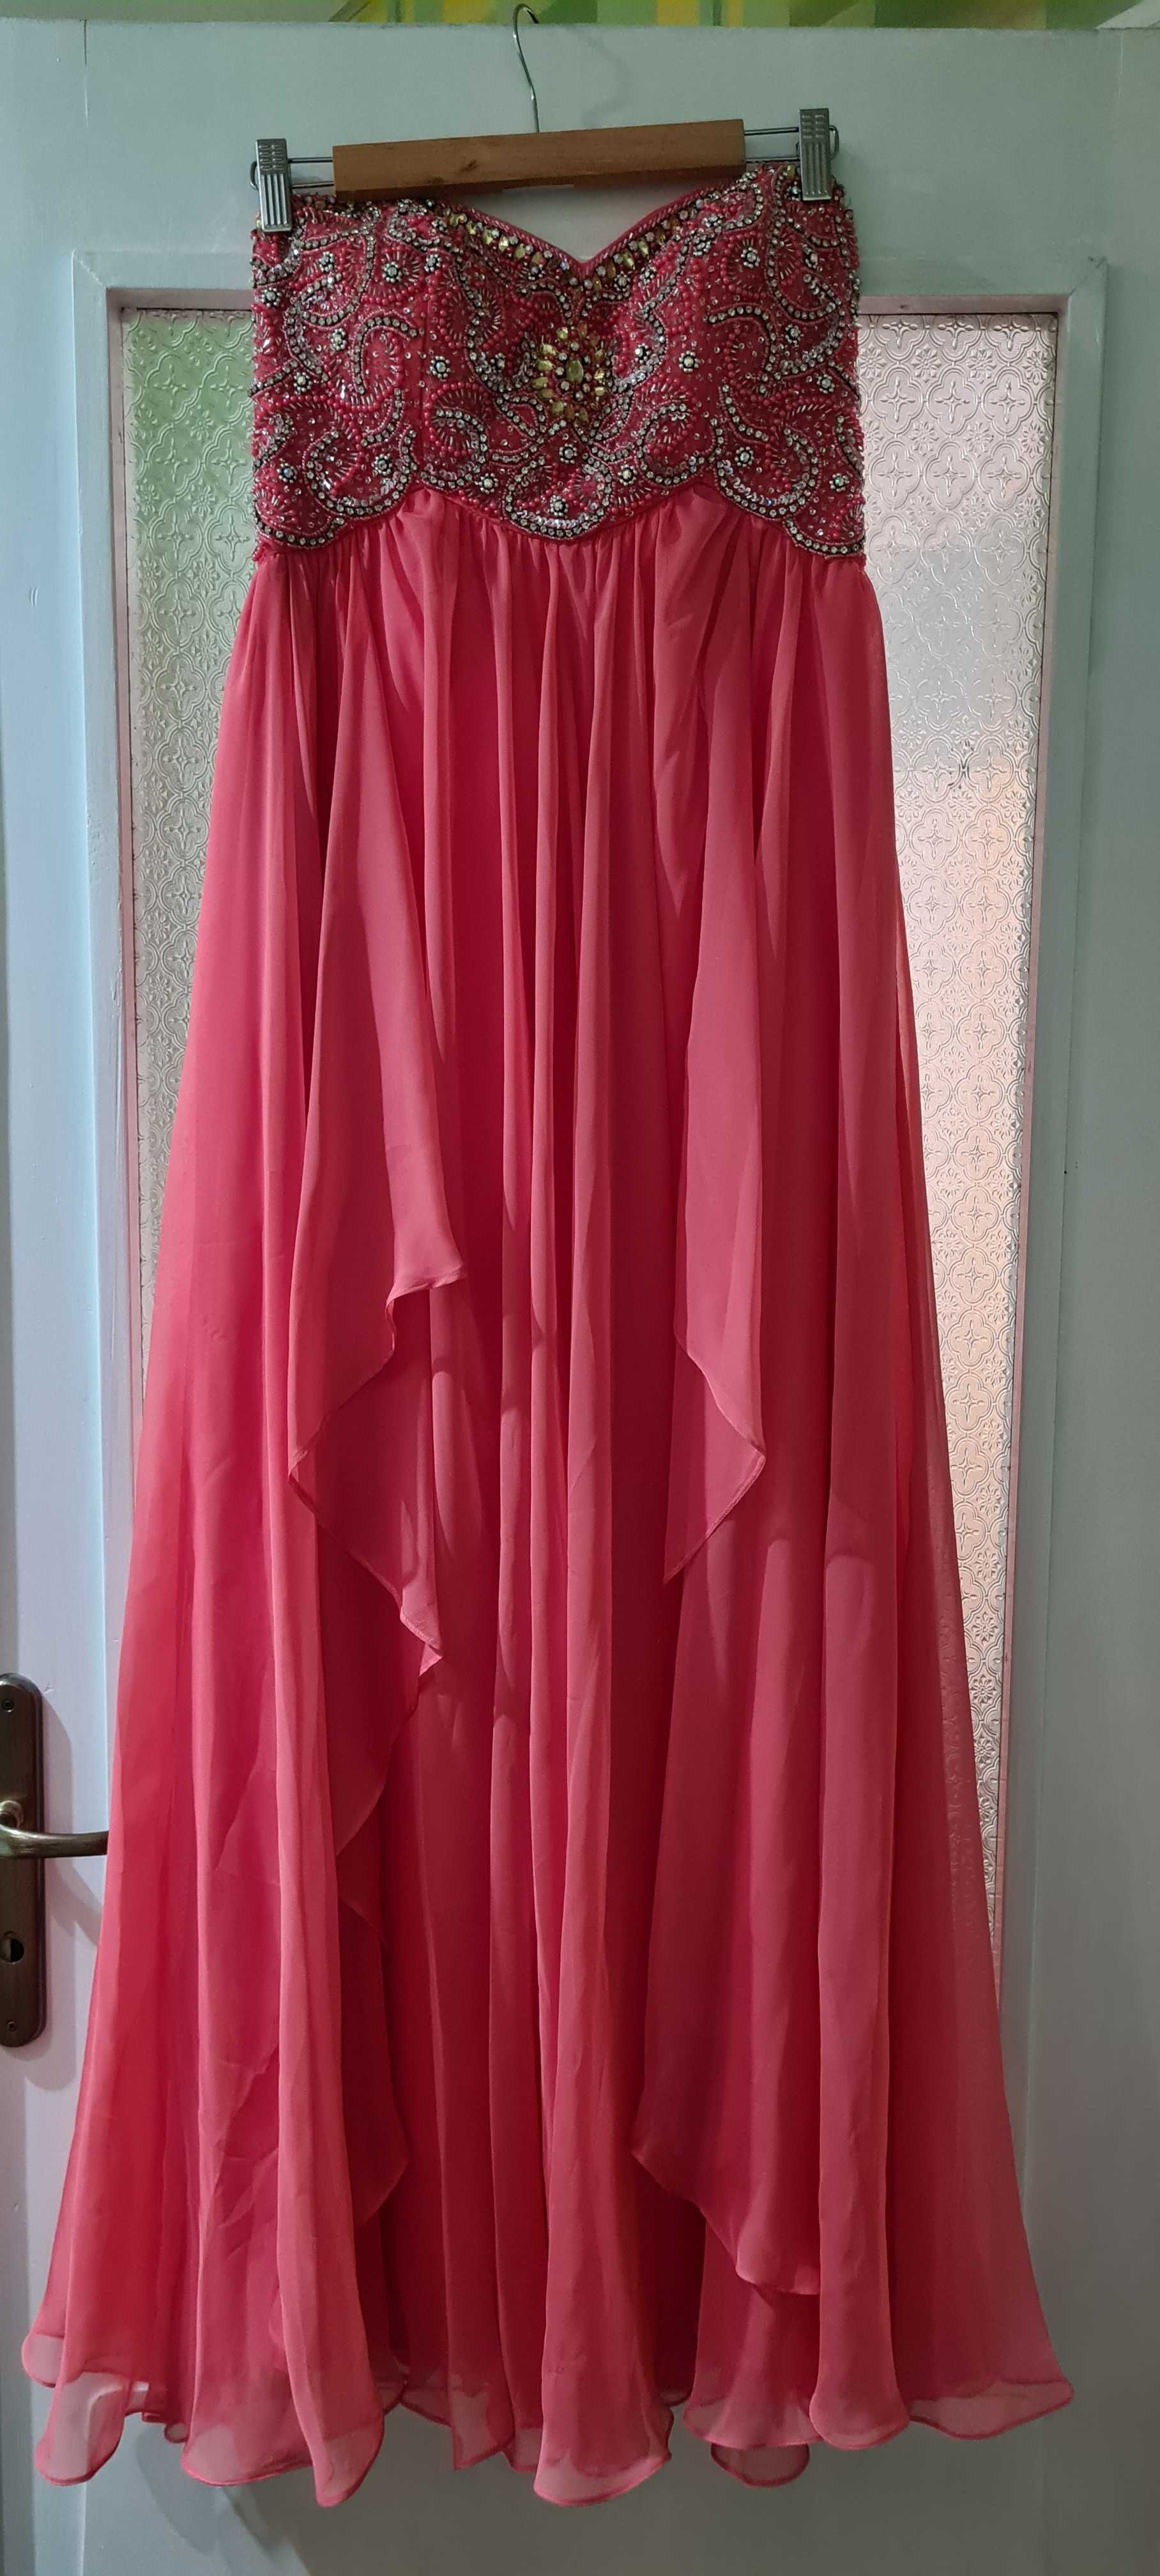 Бална рокля от Sherry Hill оригинал, размер 10 (отговаря на L)